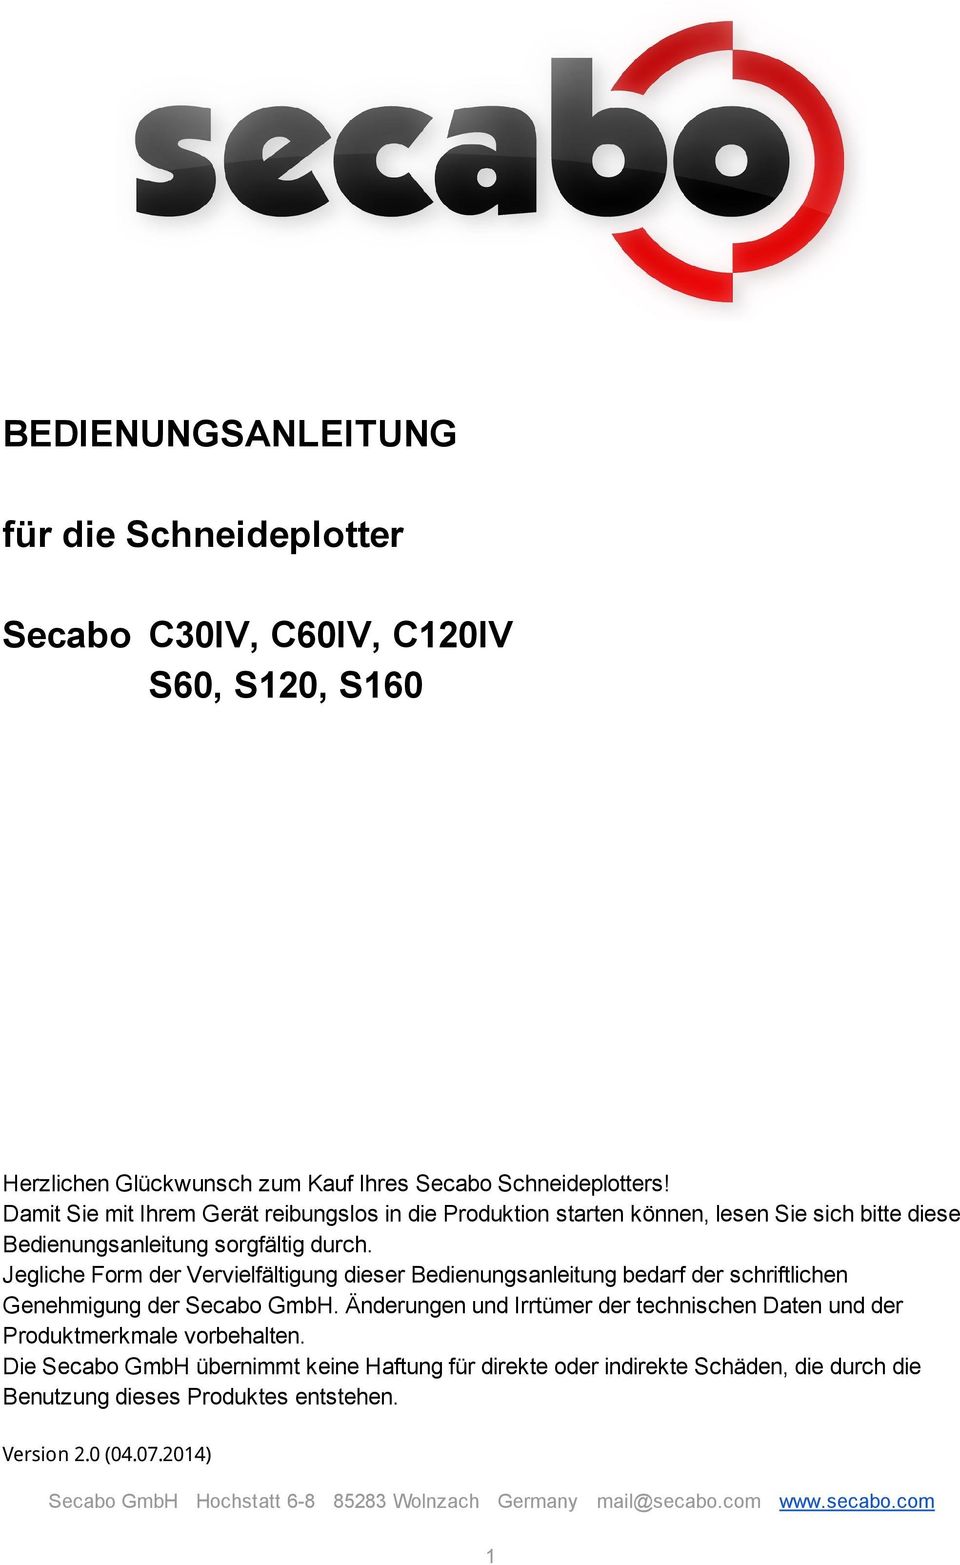 Jegliche Form der Vervielfältigung dieser Bedienungsanleitung bedarf der schriftlichen Genehmigung der Secabo GmbH.